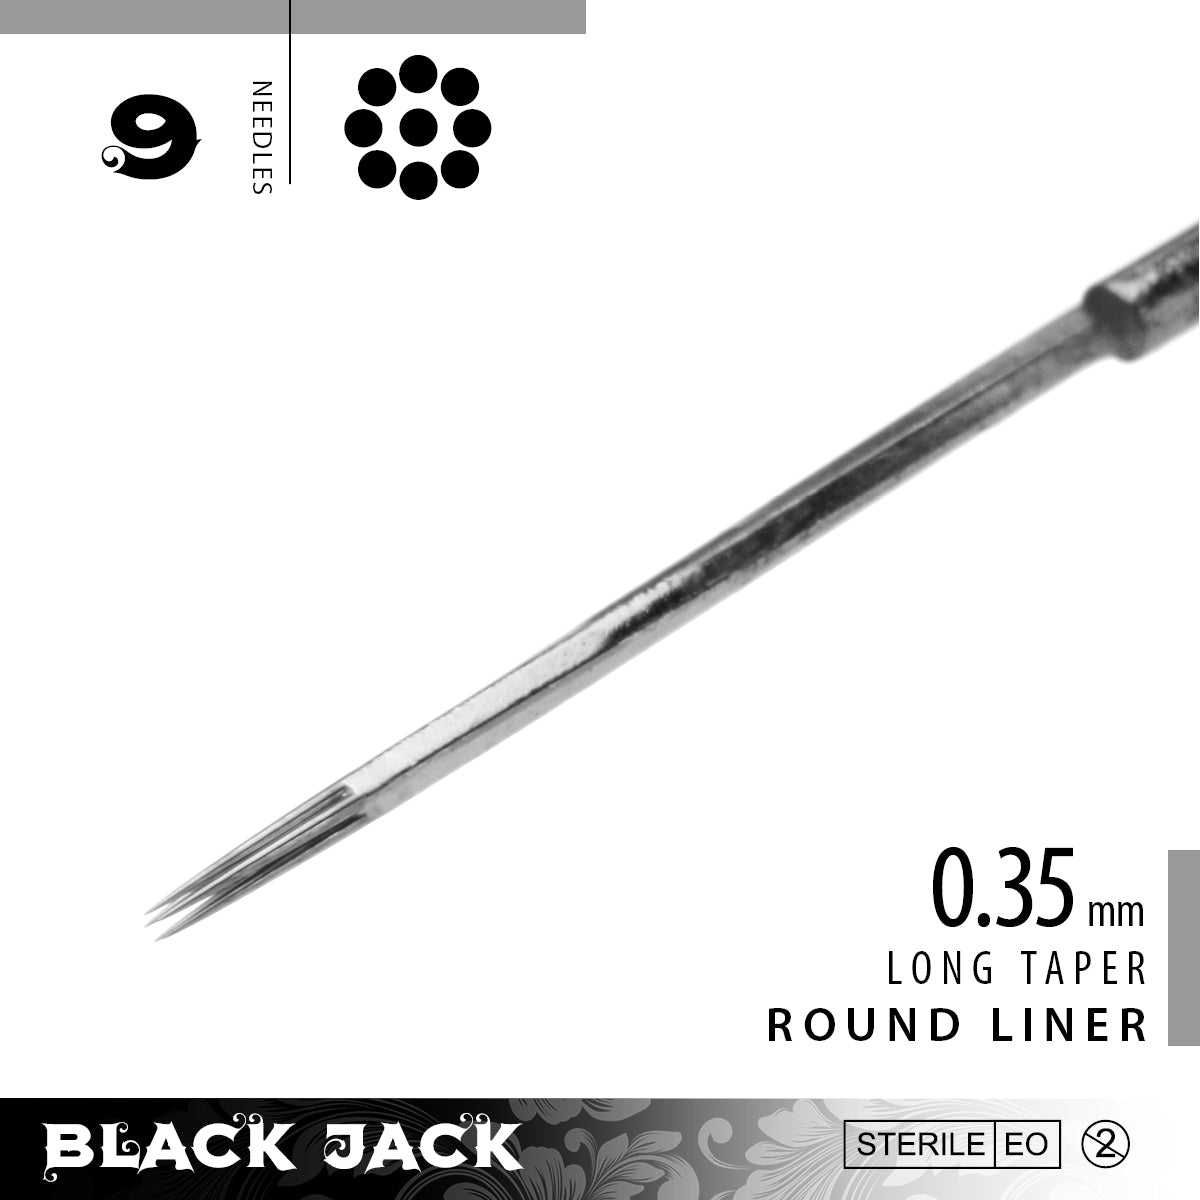 Black Jack Liner Bar Needles